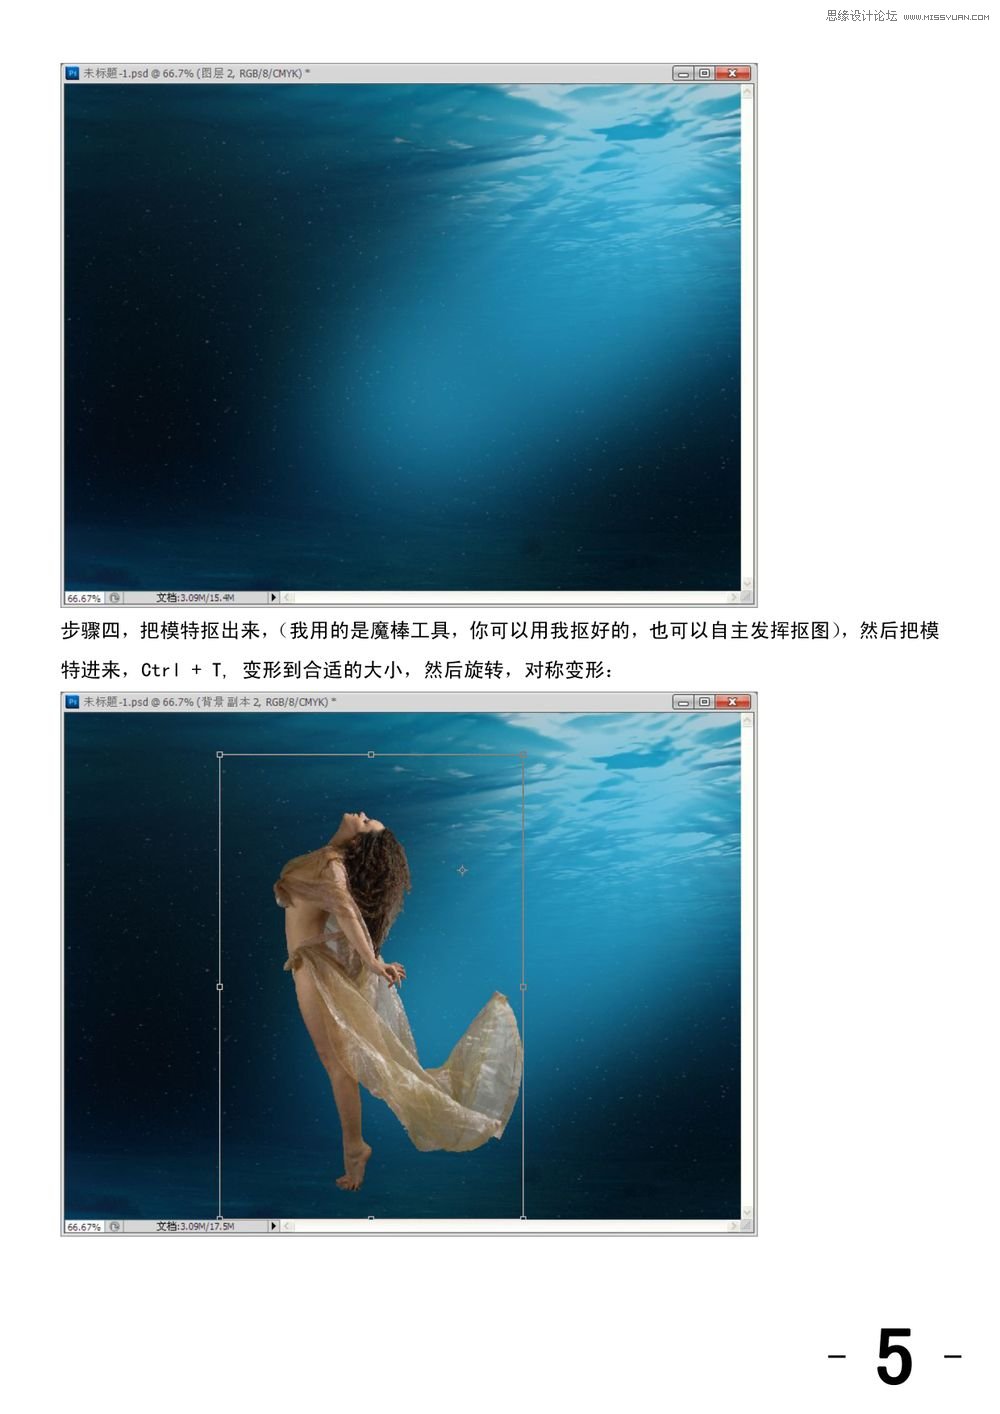 PS合成深蓝海底潜水遨游的女孩照片